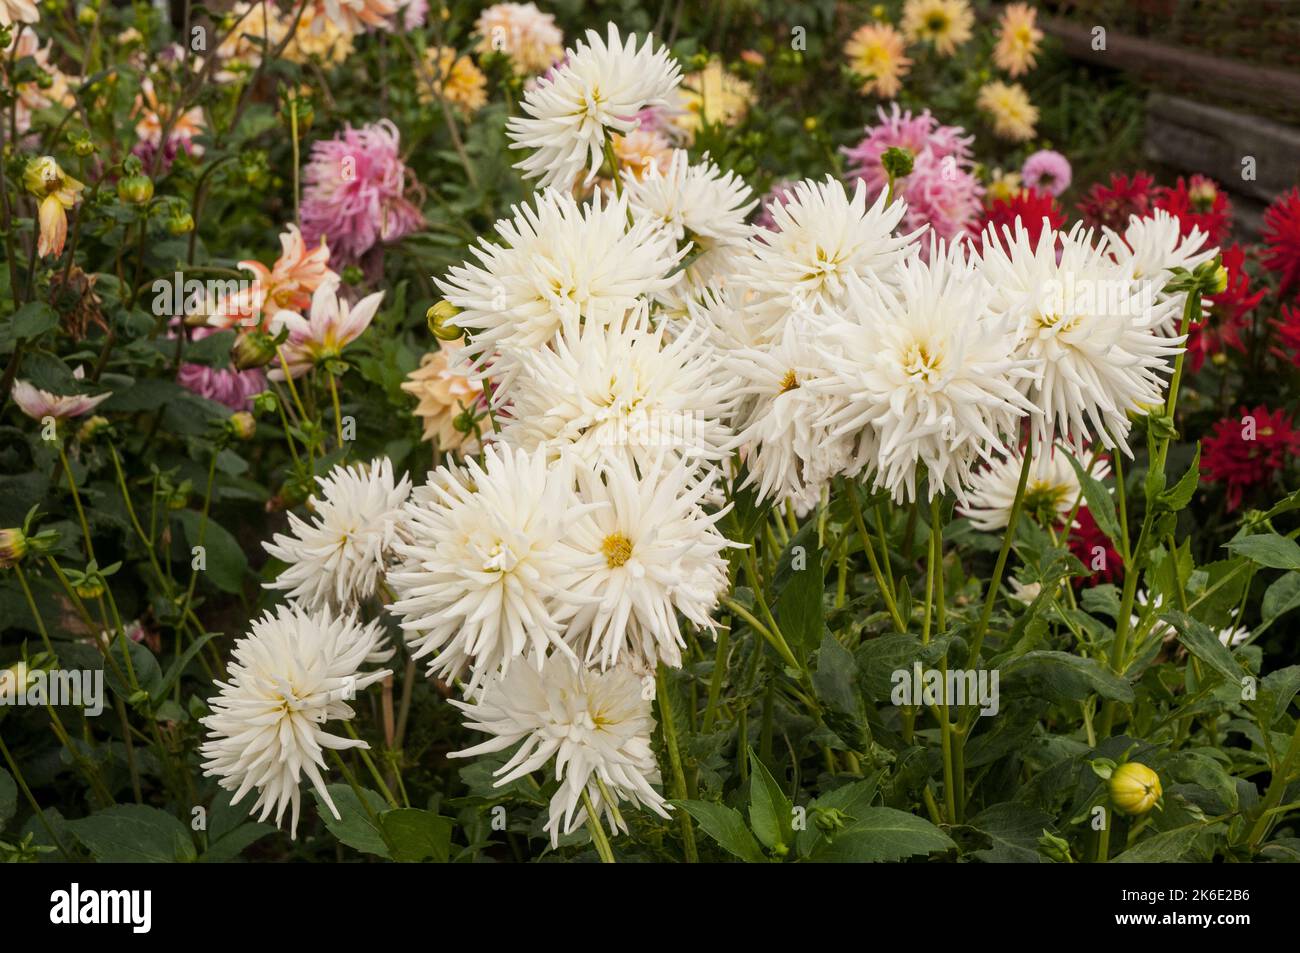 Eine Gruppe von nicht-disbuddierten Chrysanthemen / Dendranthema Charles Tandy ein weißer Mittelstand, der im frühen Herbst blüht Chrysant Stockfoto